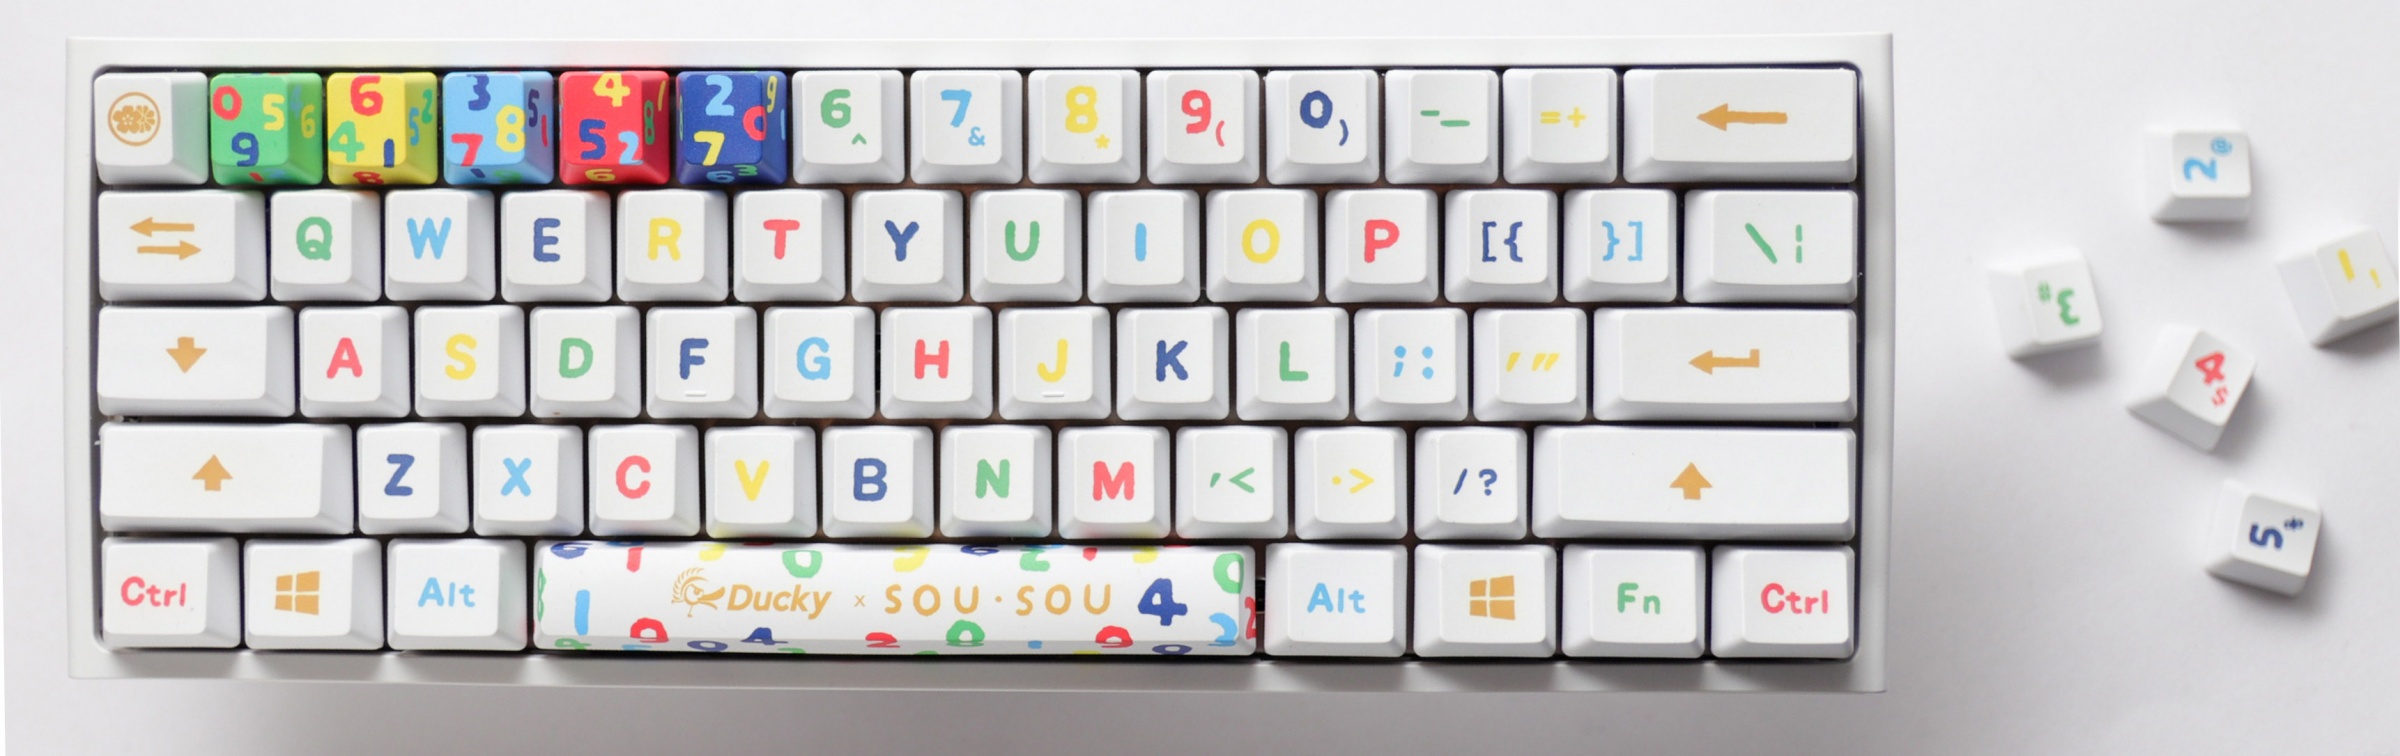  Mechanical keyboard Ducky x SOU SOU One 2 Mini Cherry MX Black